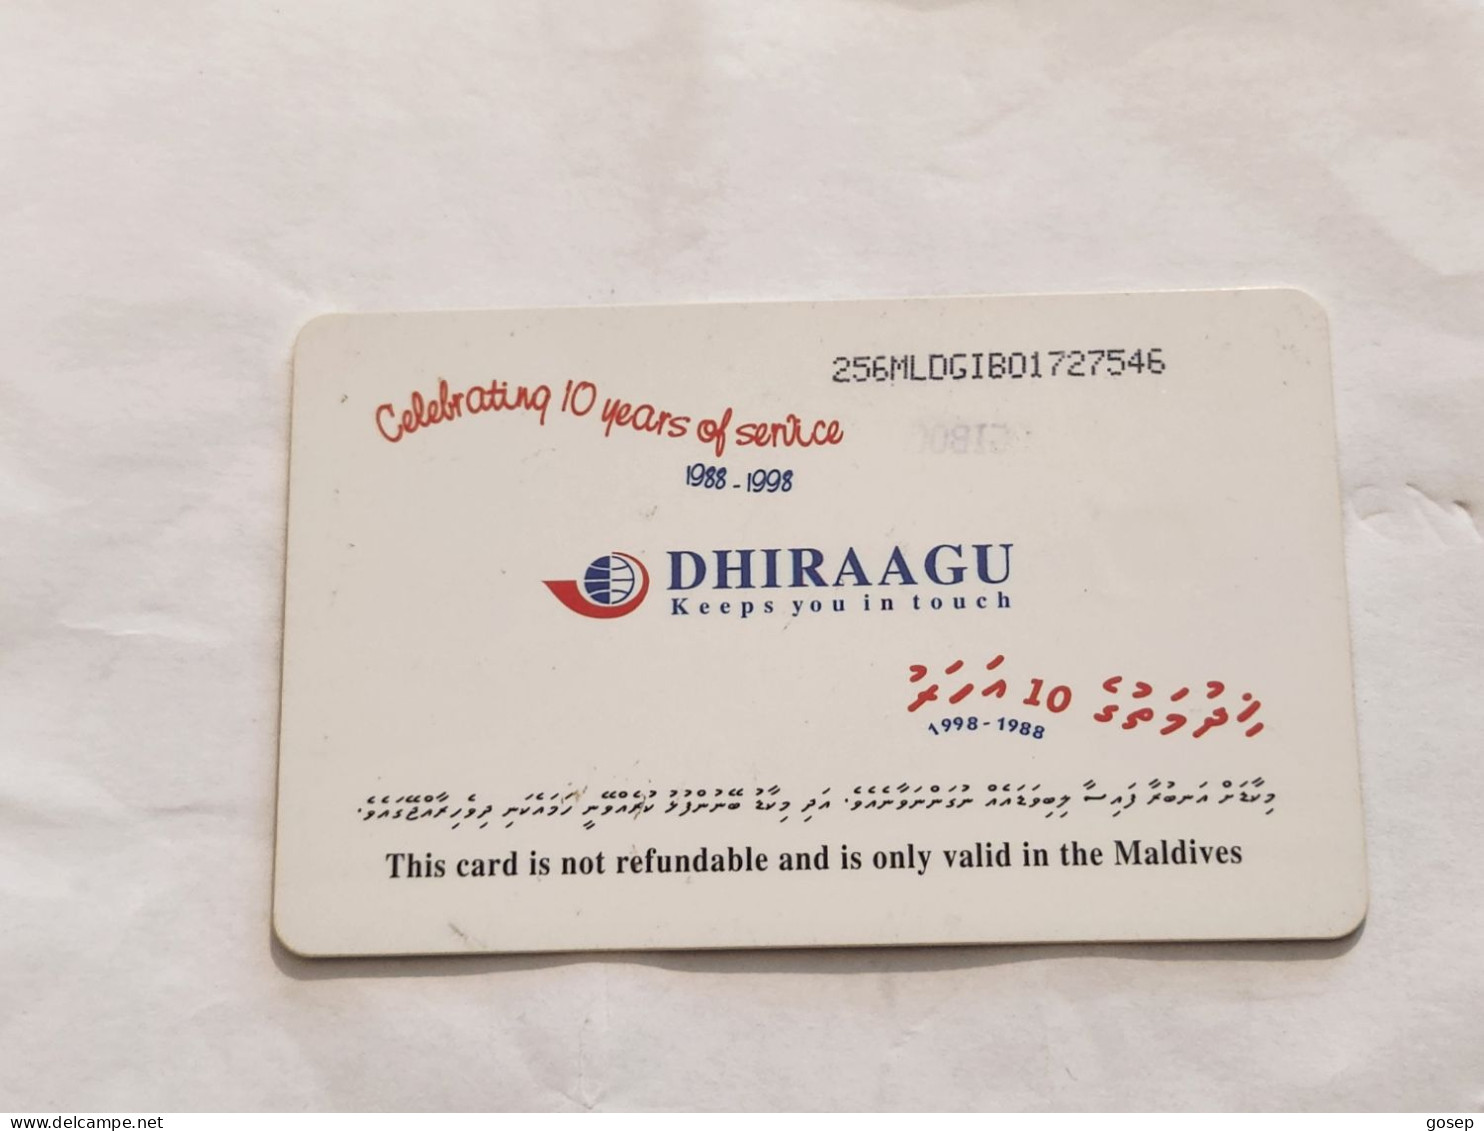 Maldives-(256MLDGIB-MAL-C-01)-save The Turtle-(44)-(RF30)-(256MLDGIB01727546)-used Card+1card Prepiad Free - Maldiven